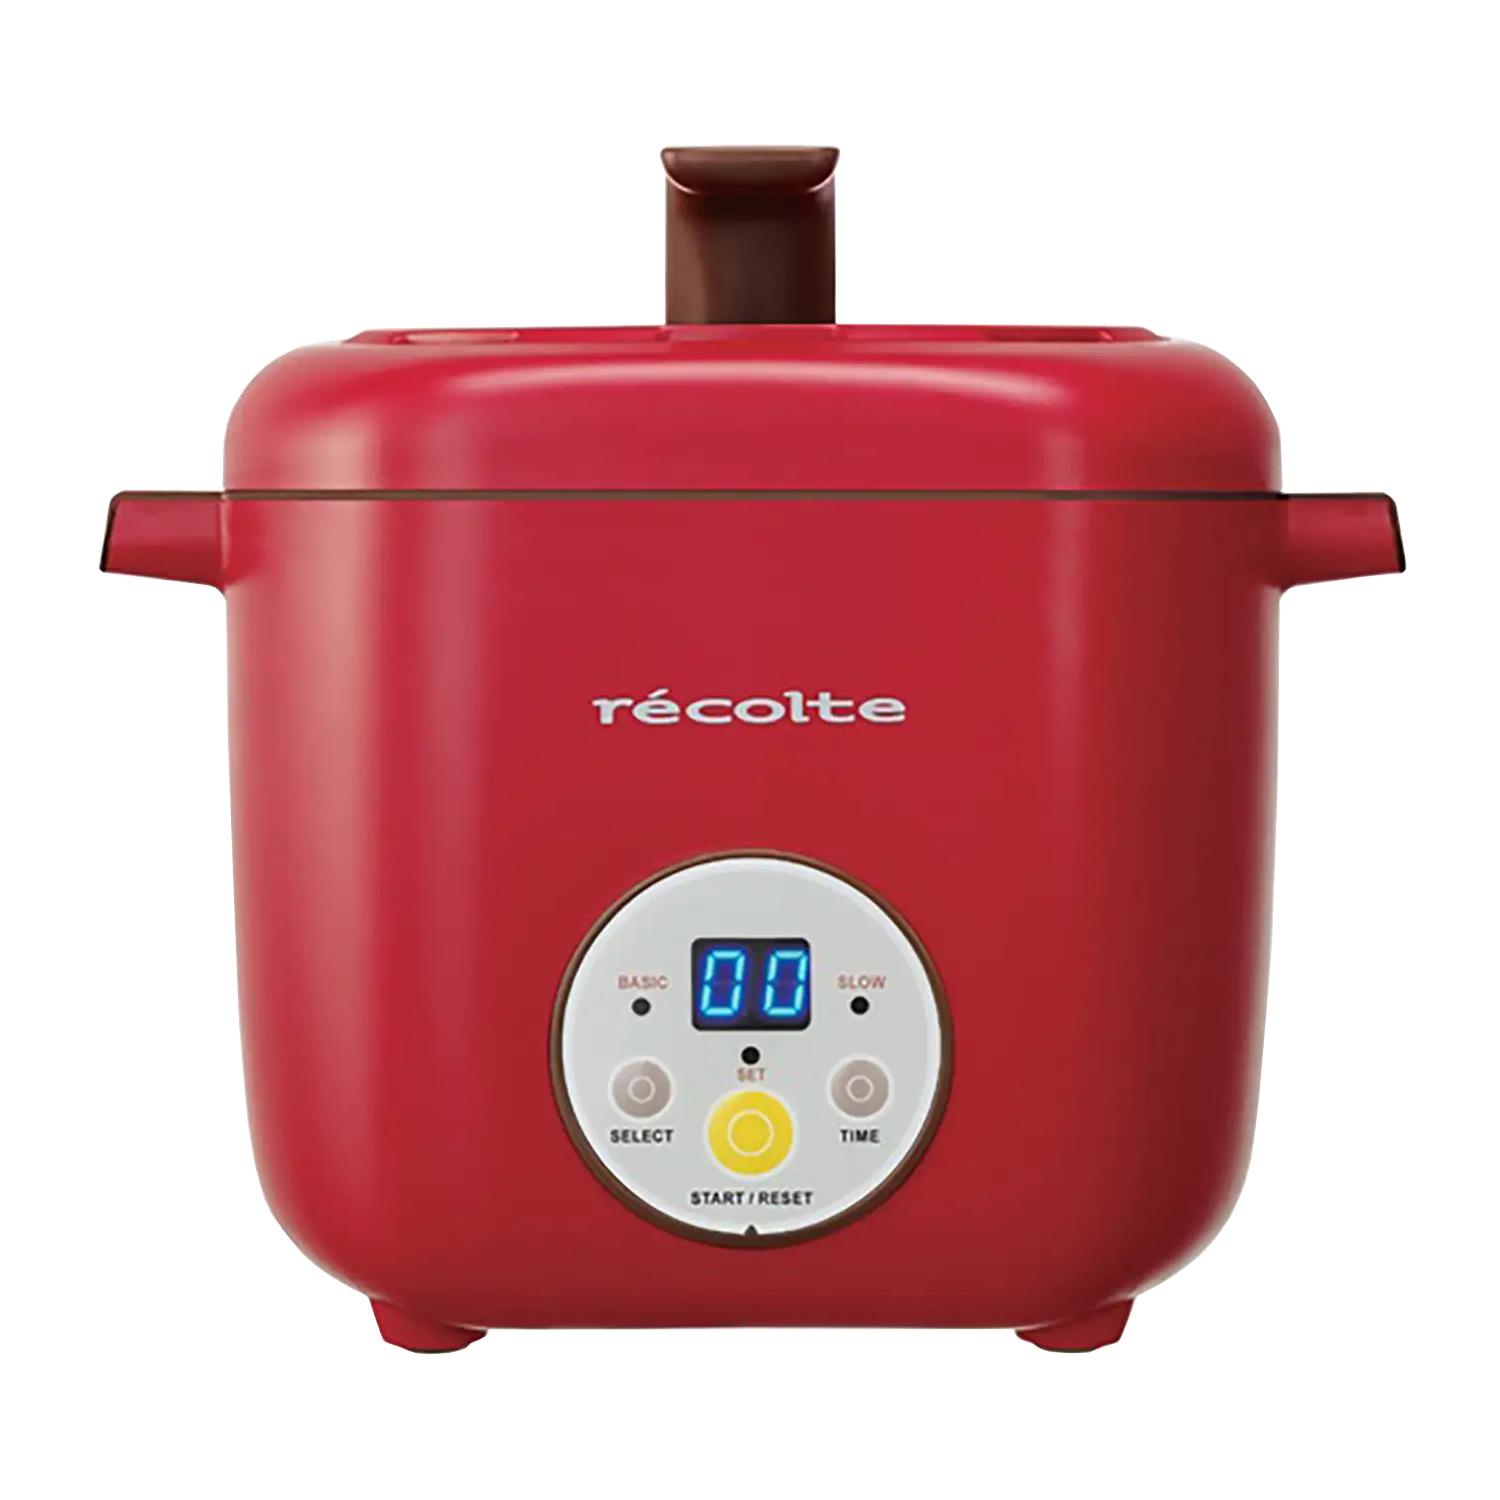 RECOLTE 日式電飯煲-陶瓷內鍋 RHC-1C/R 紅色